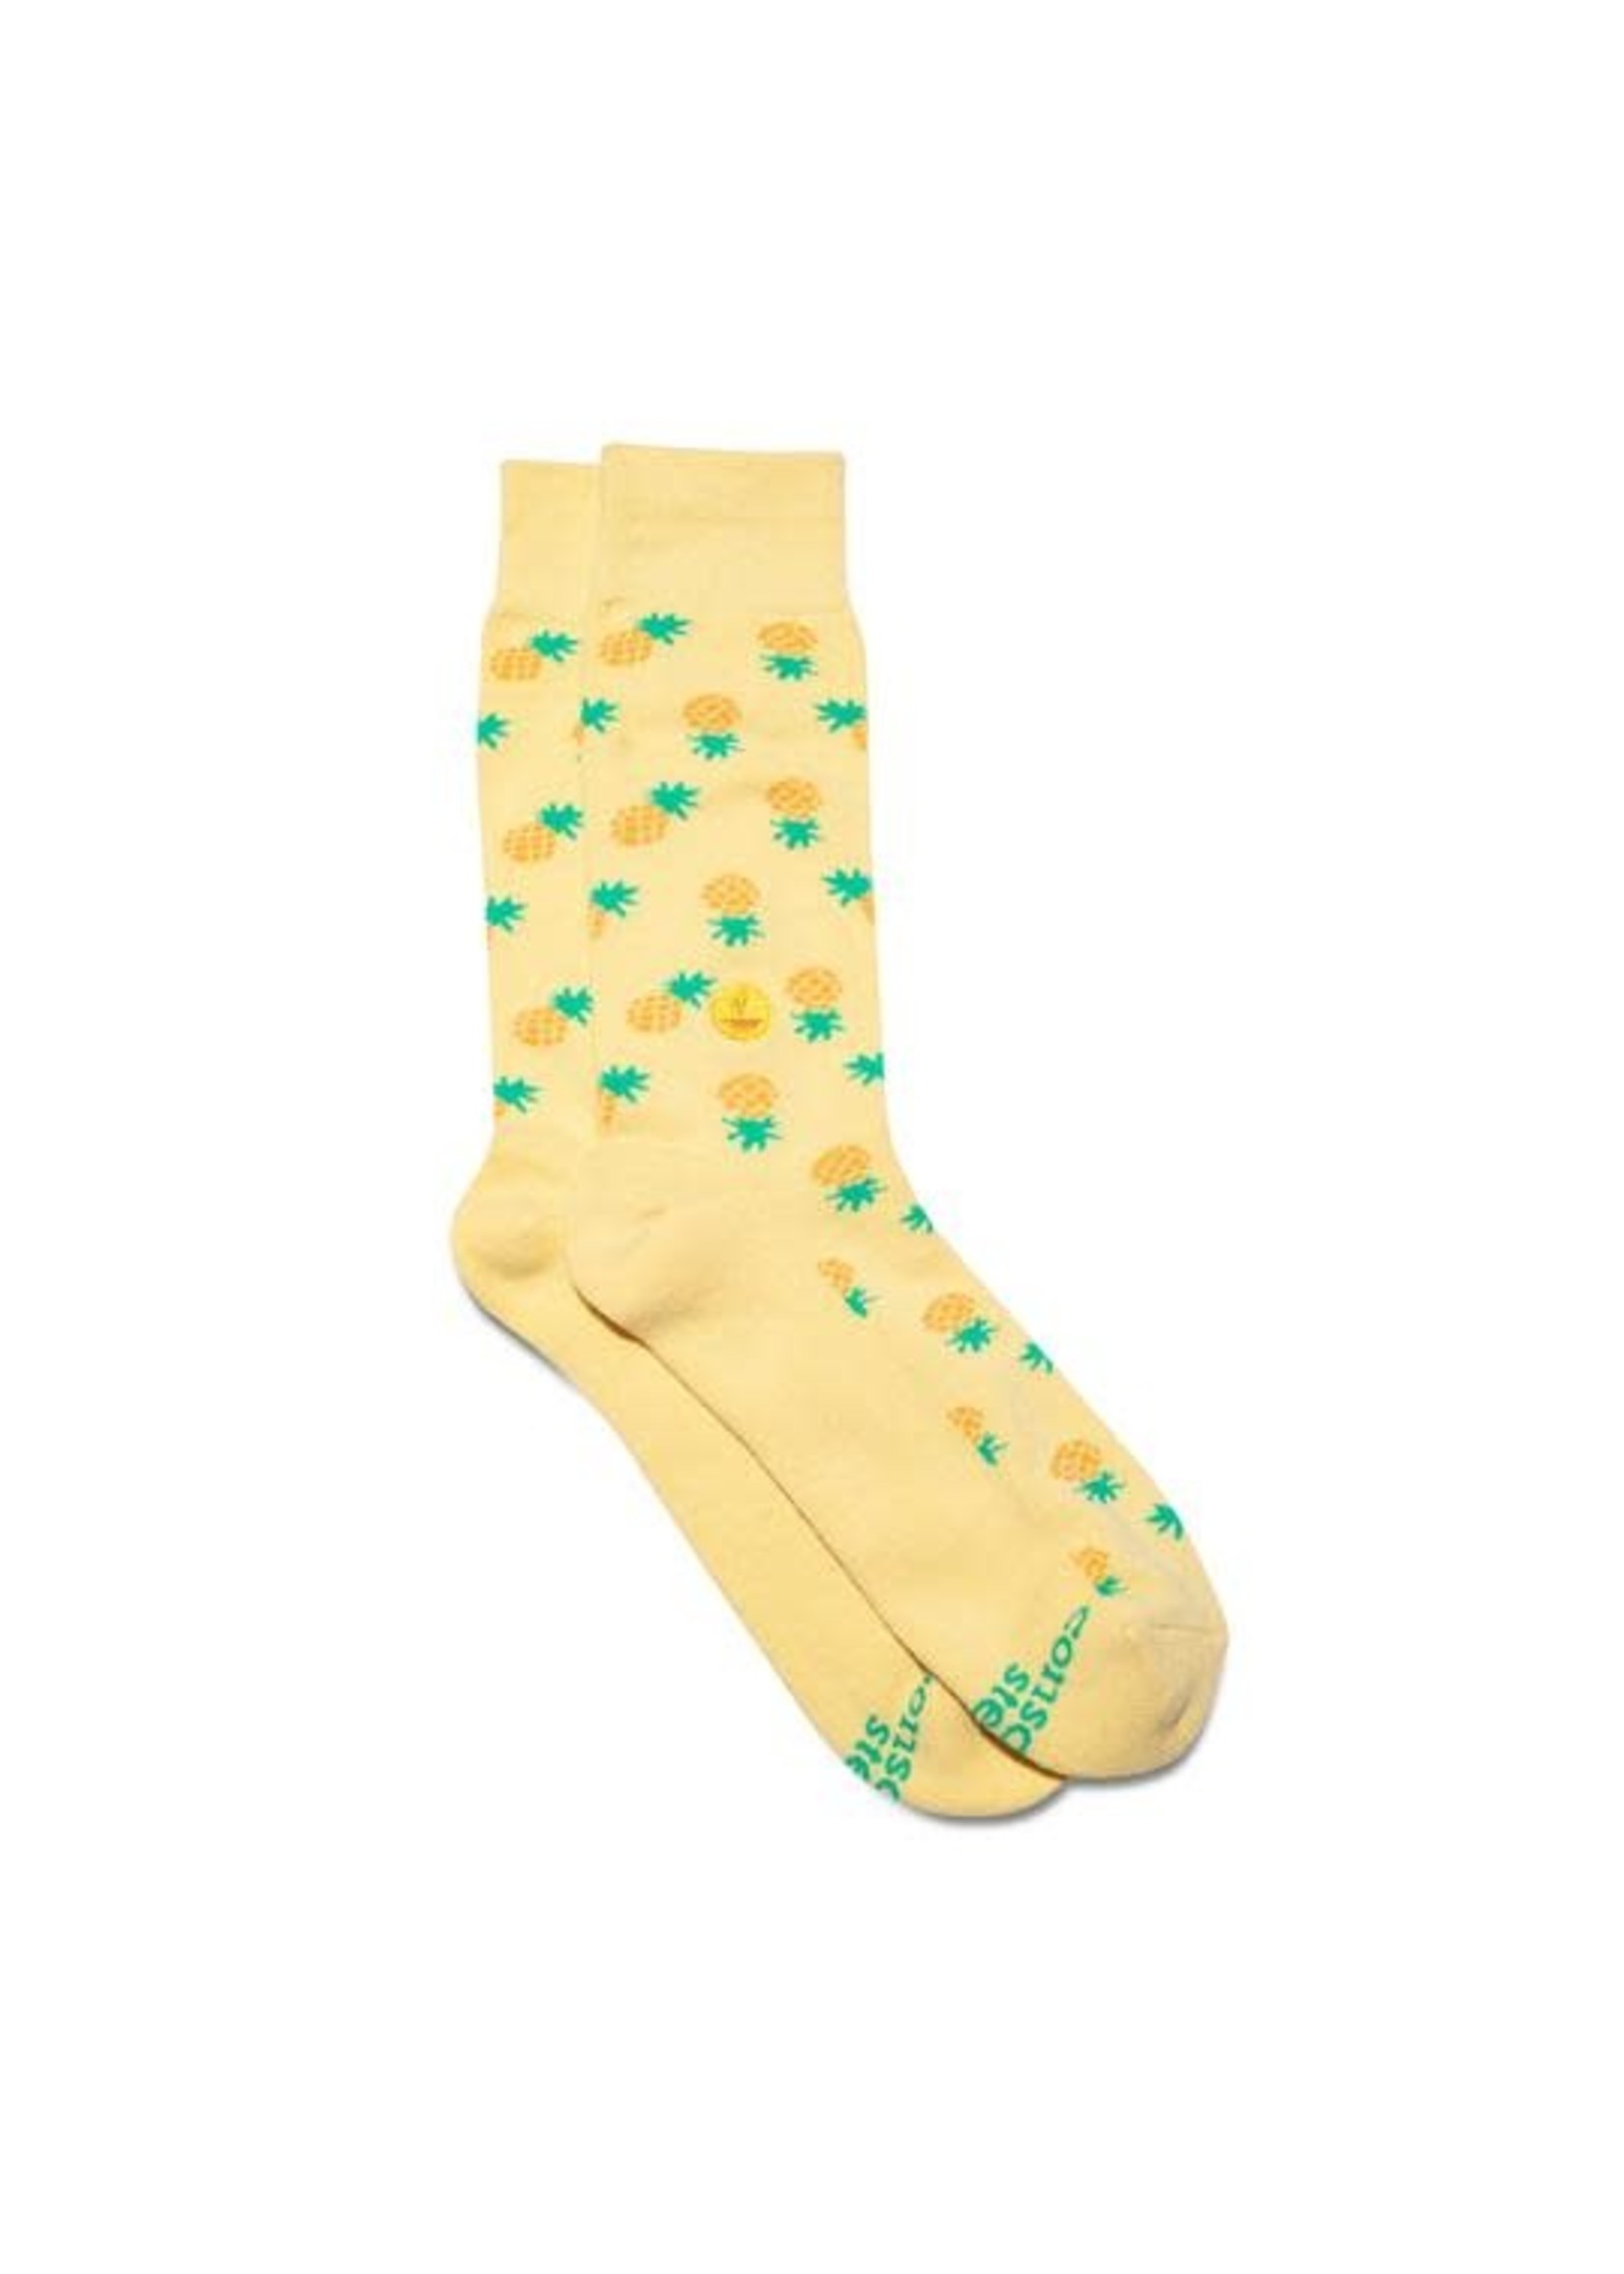 Socks - Provide Meals Pineapples